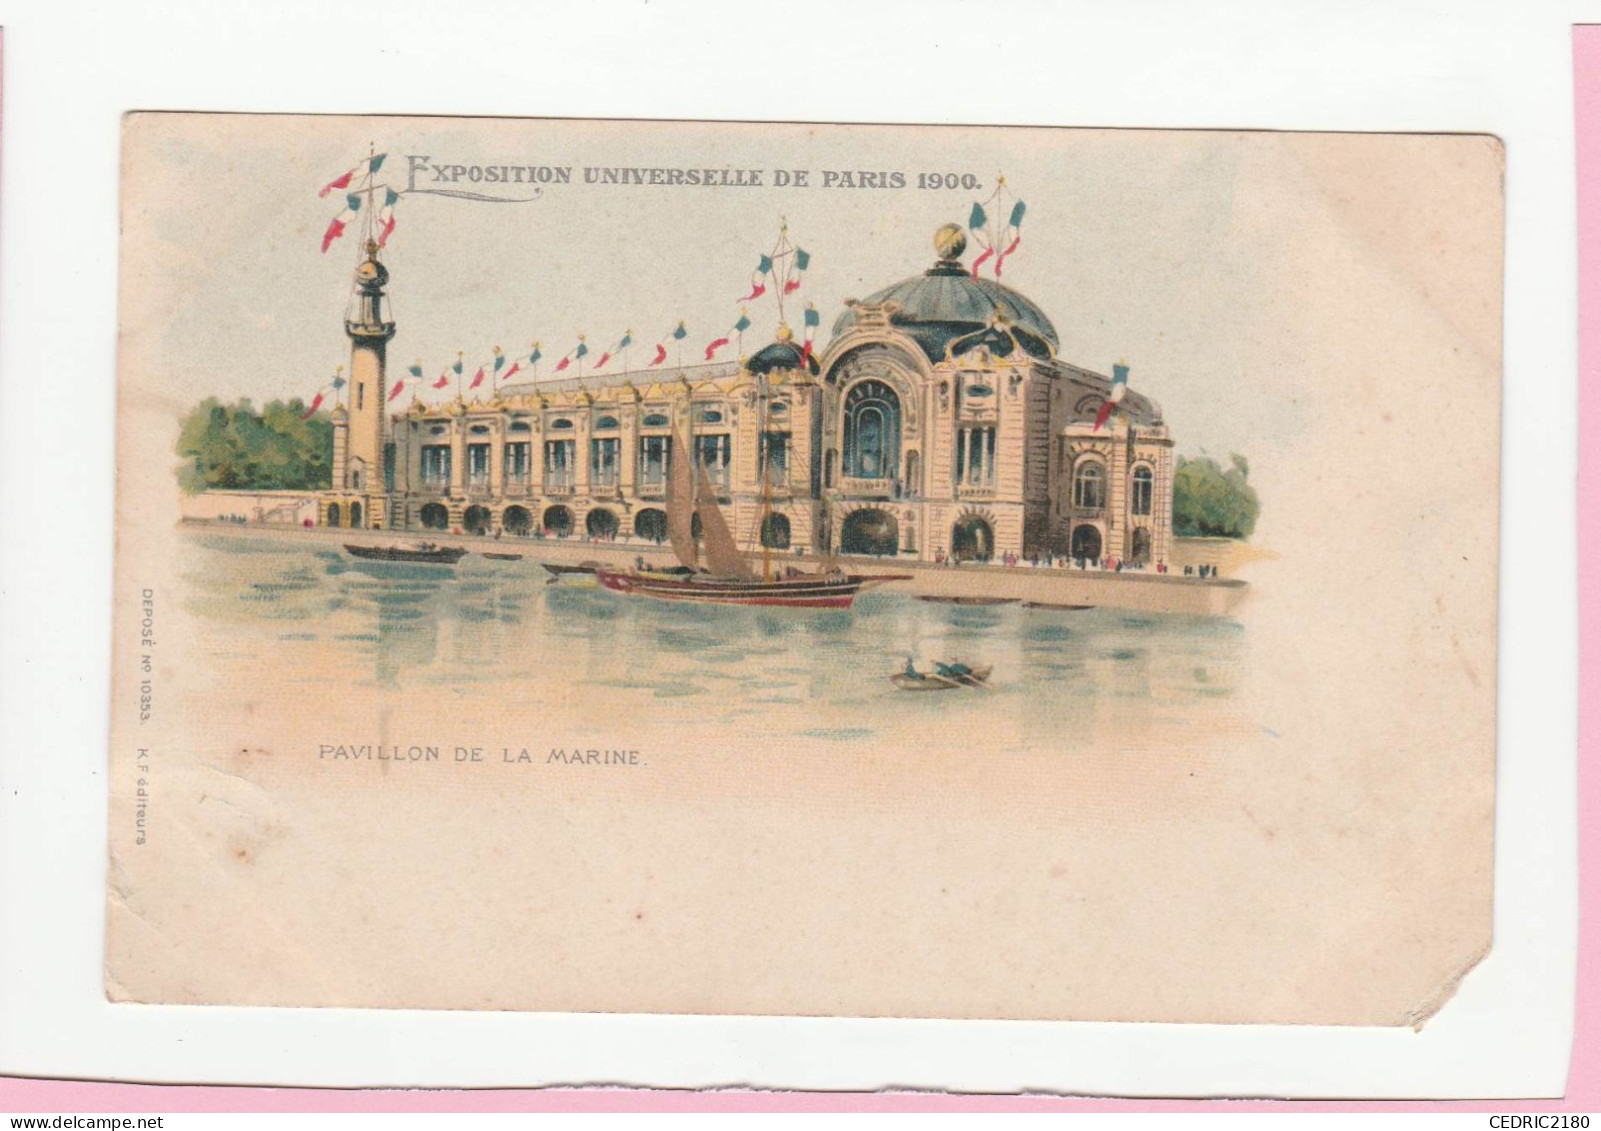 EXPOSITION UNIVERSELLE DE PARIS 1900 PAVILLON DE LA MARINE - Expositions